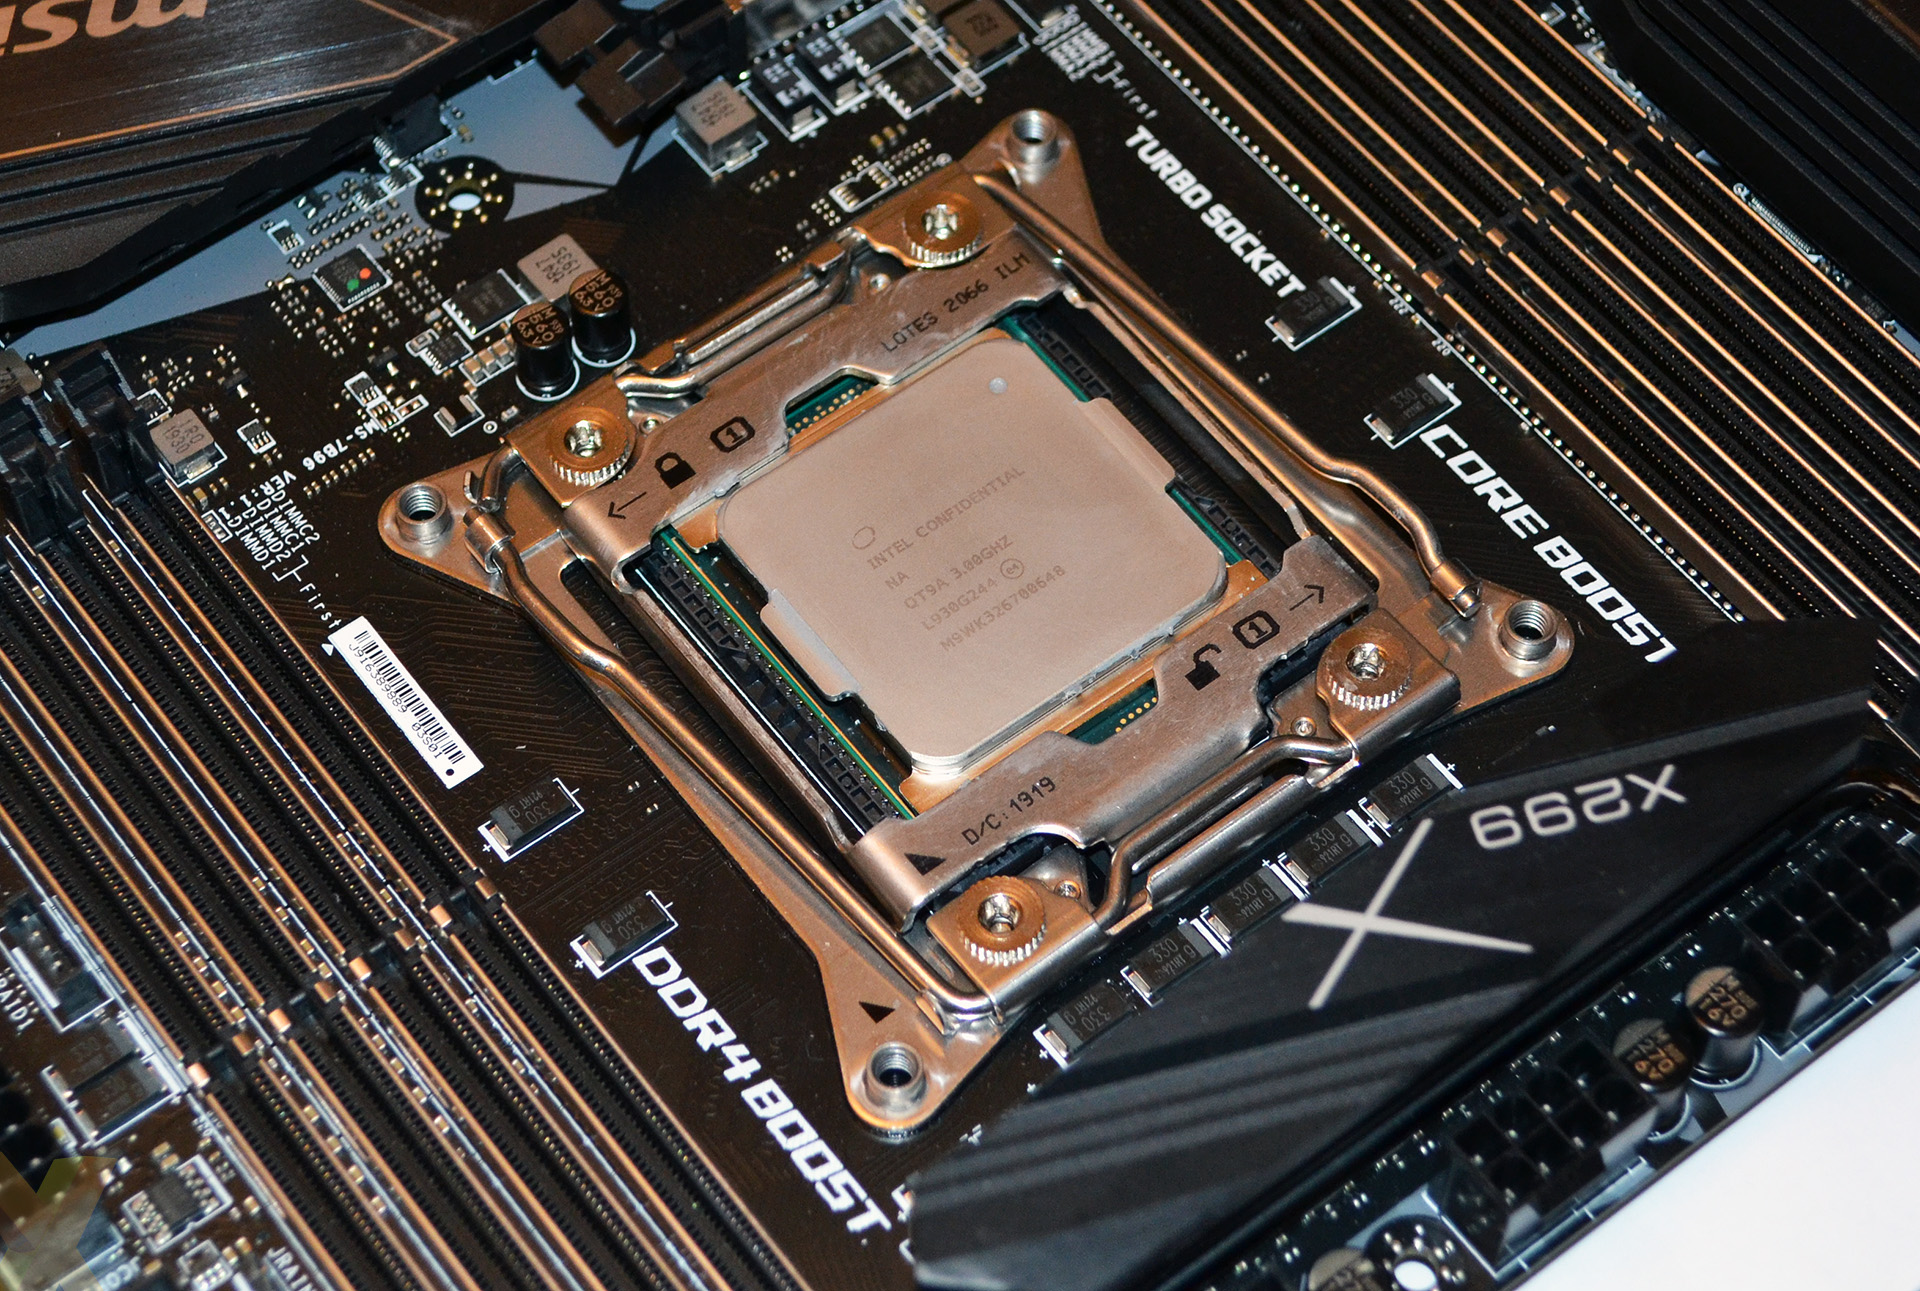 Review: Intel Core i9-10980XE - CPU - HEXUS.net